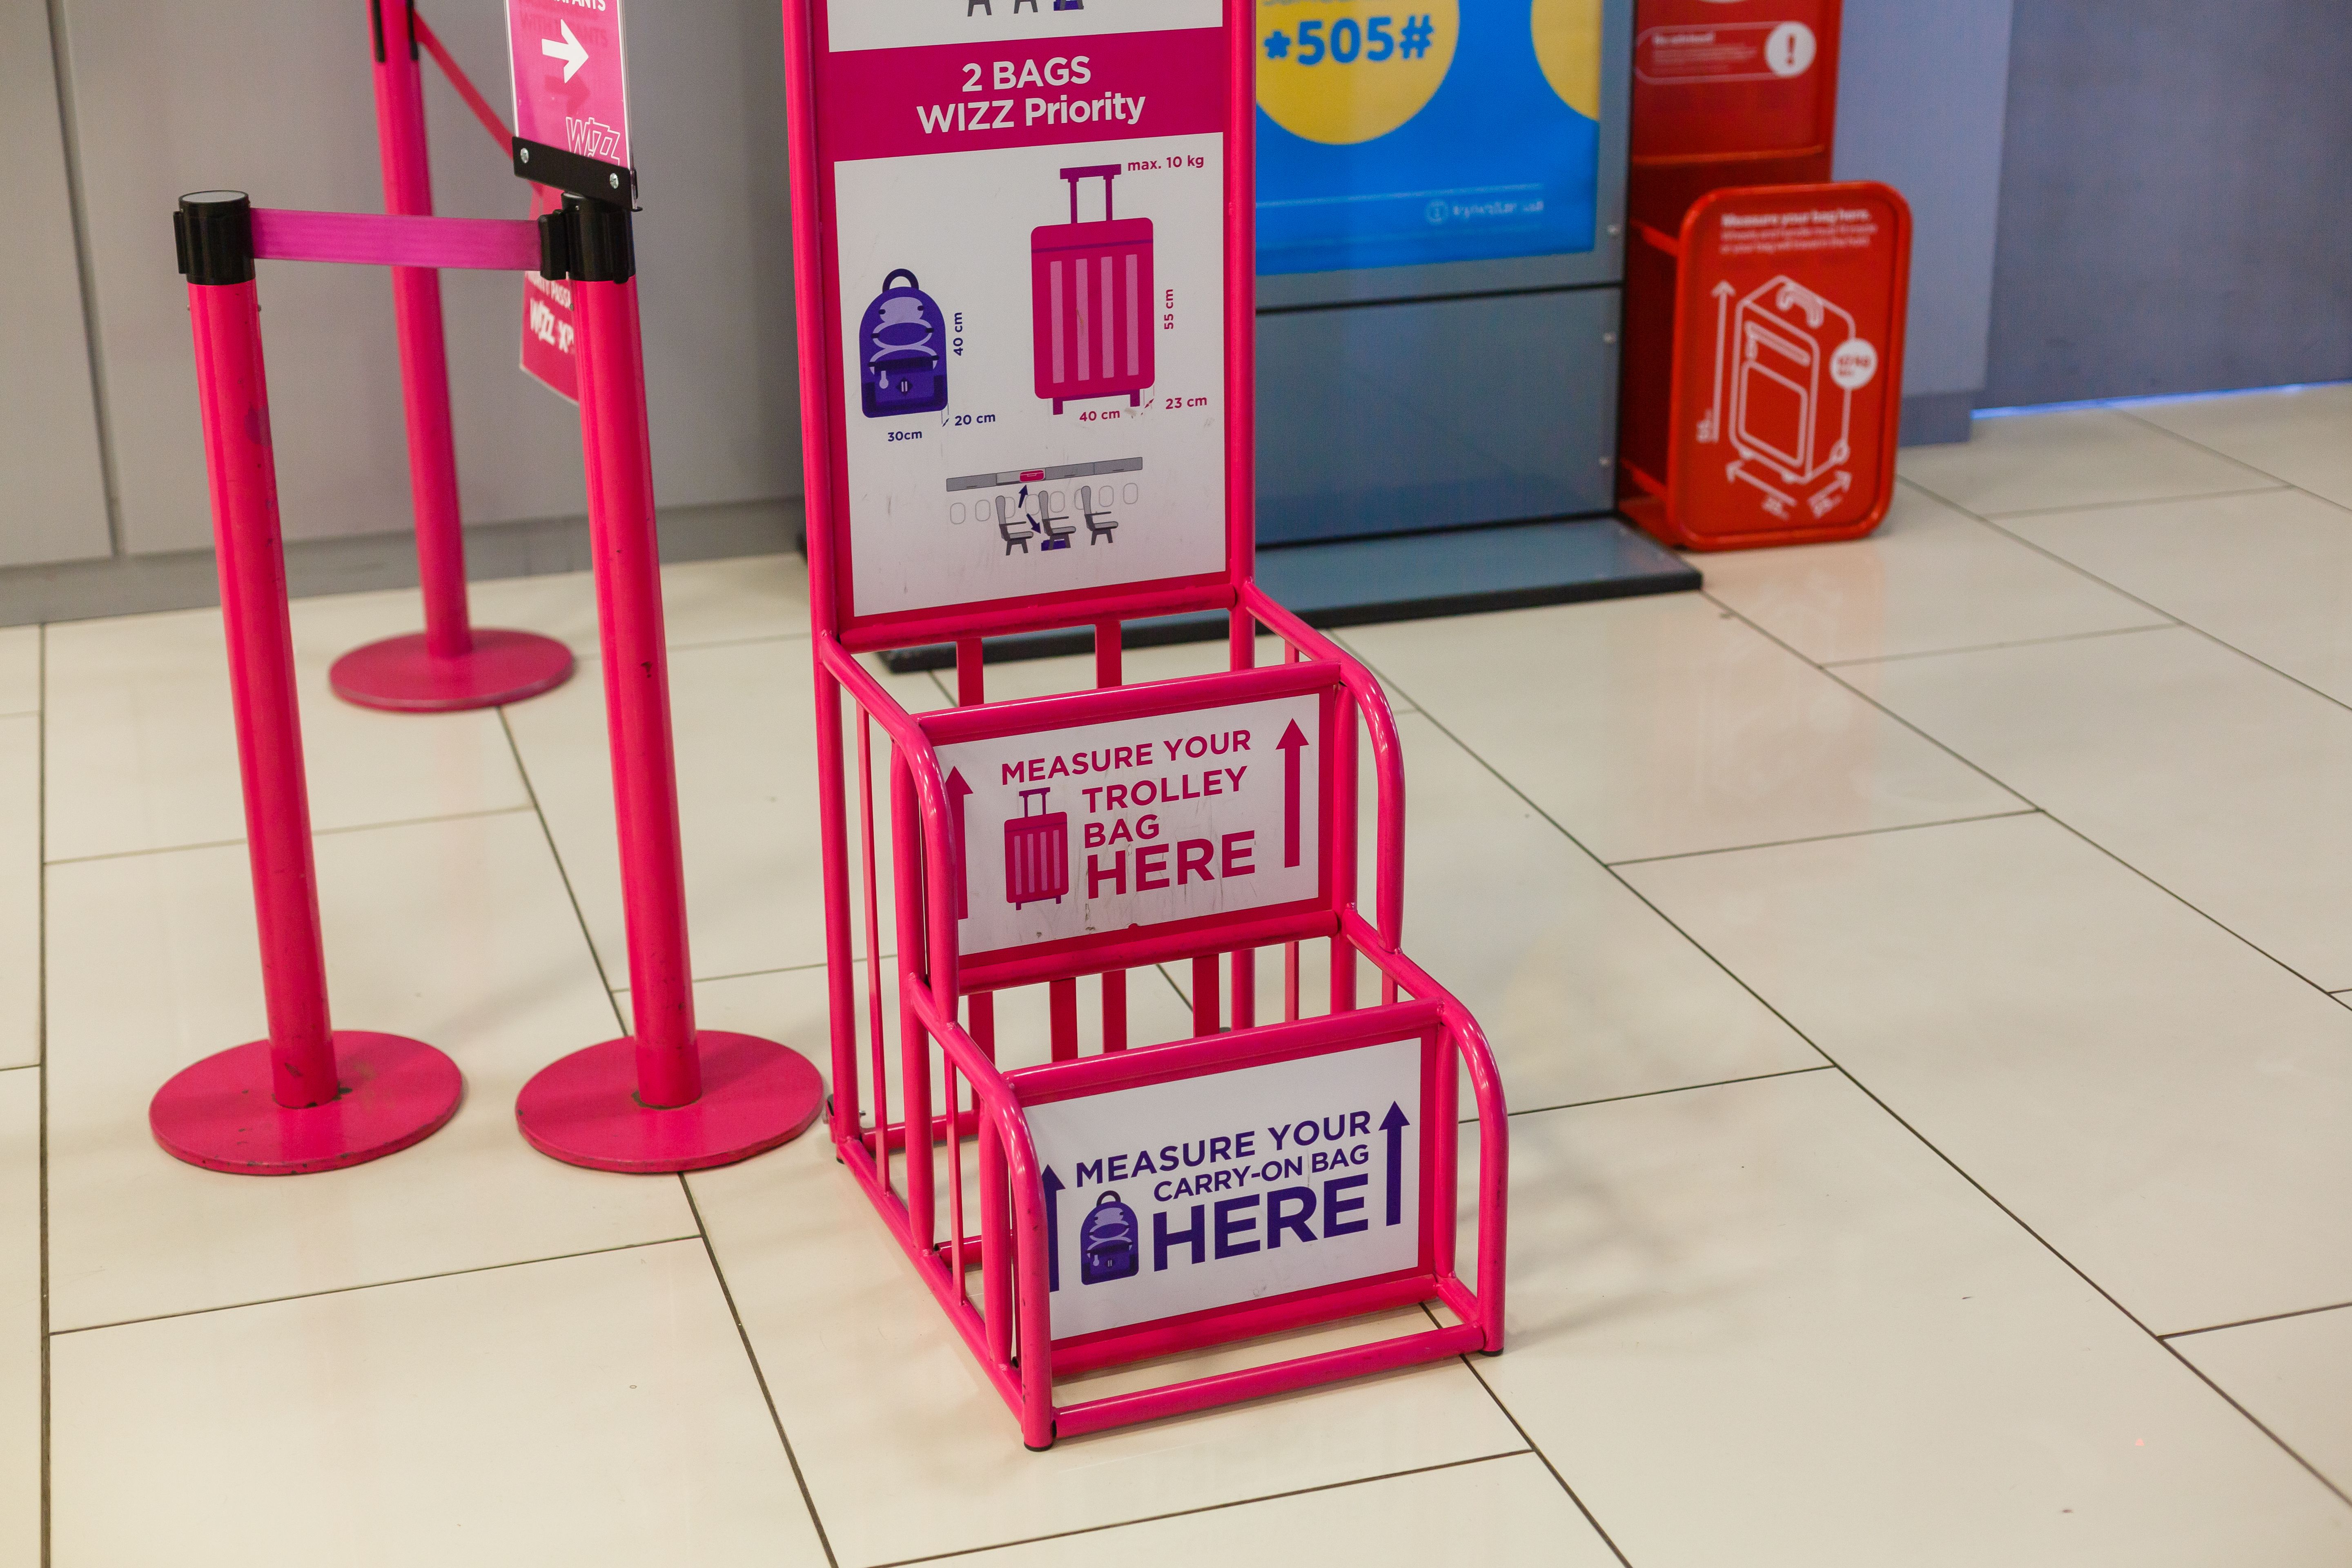 Wizz Air baggage measurement